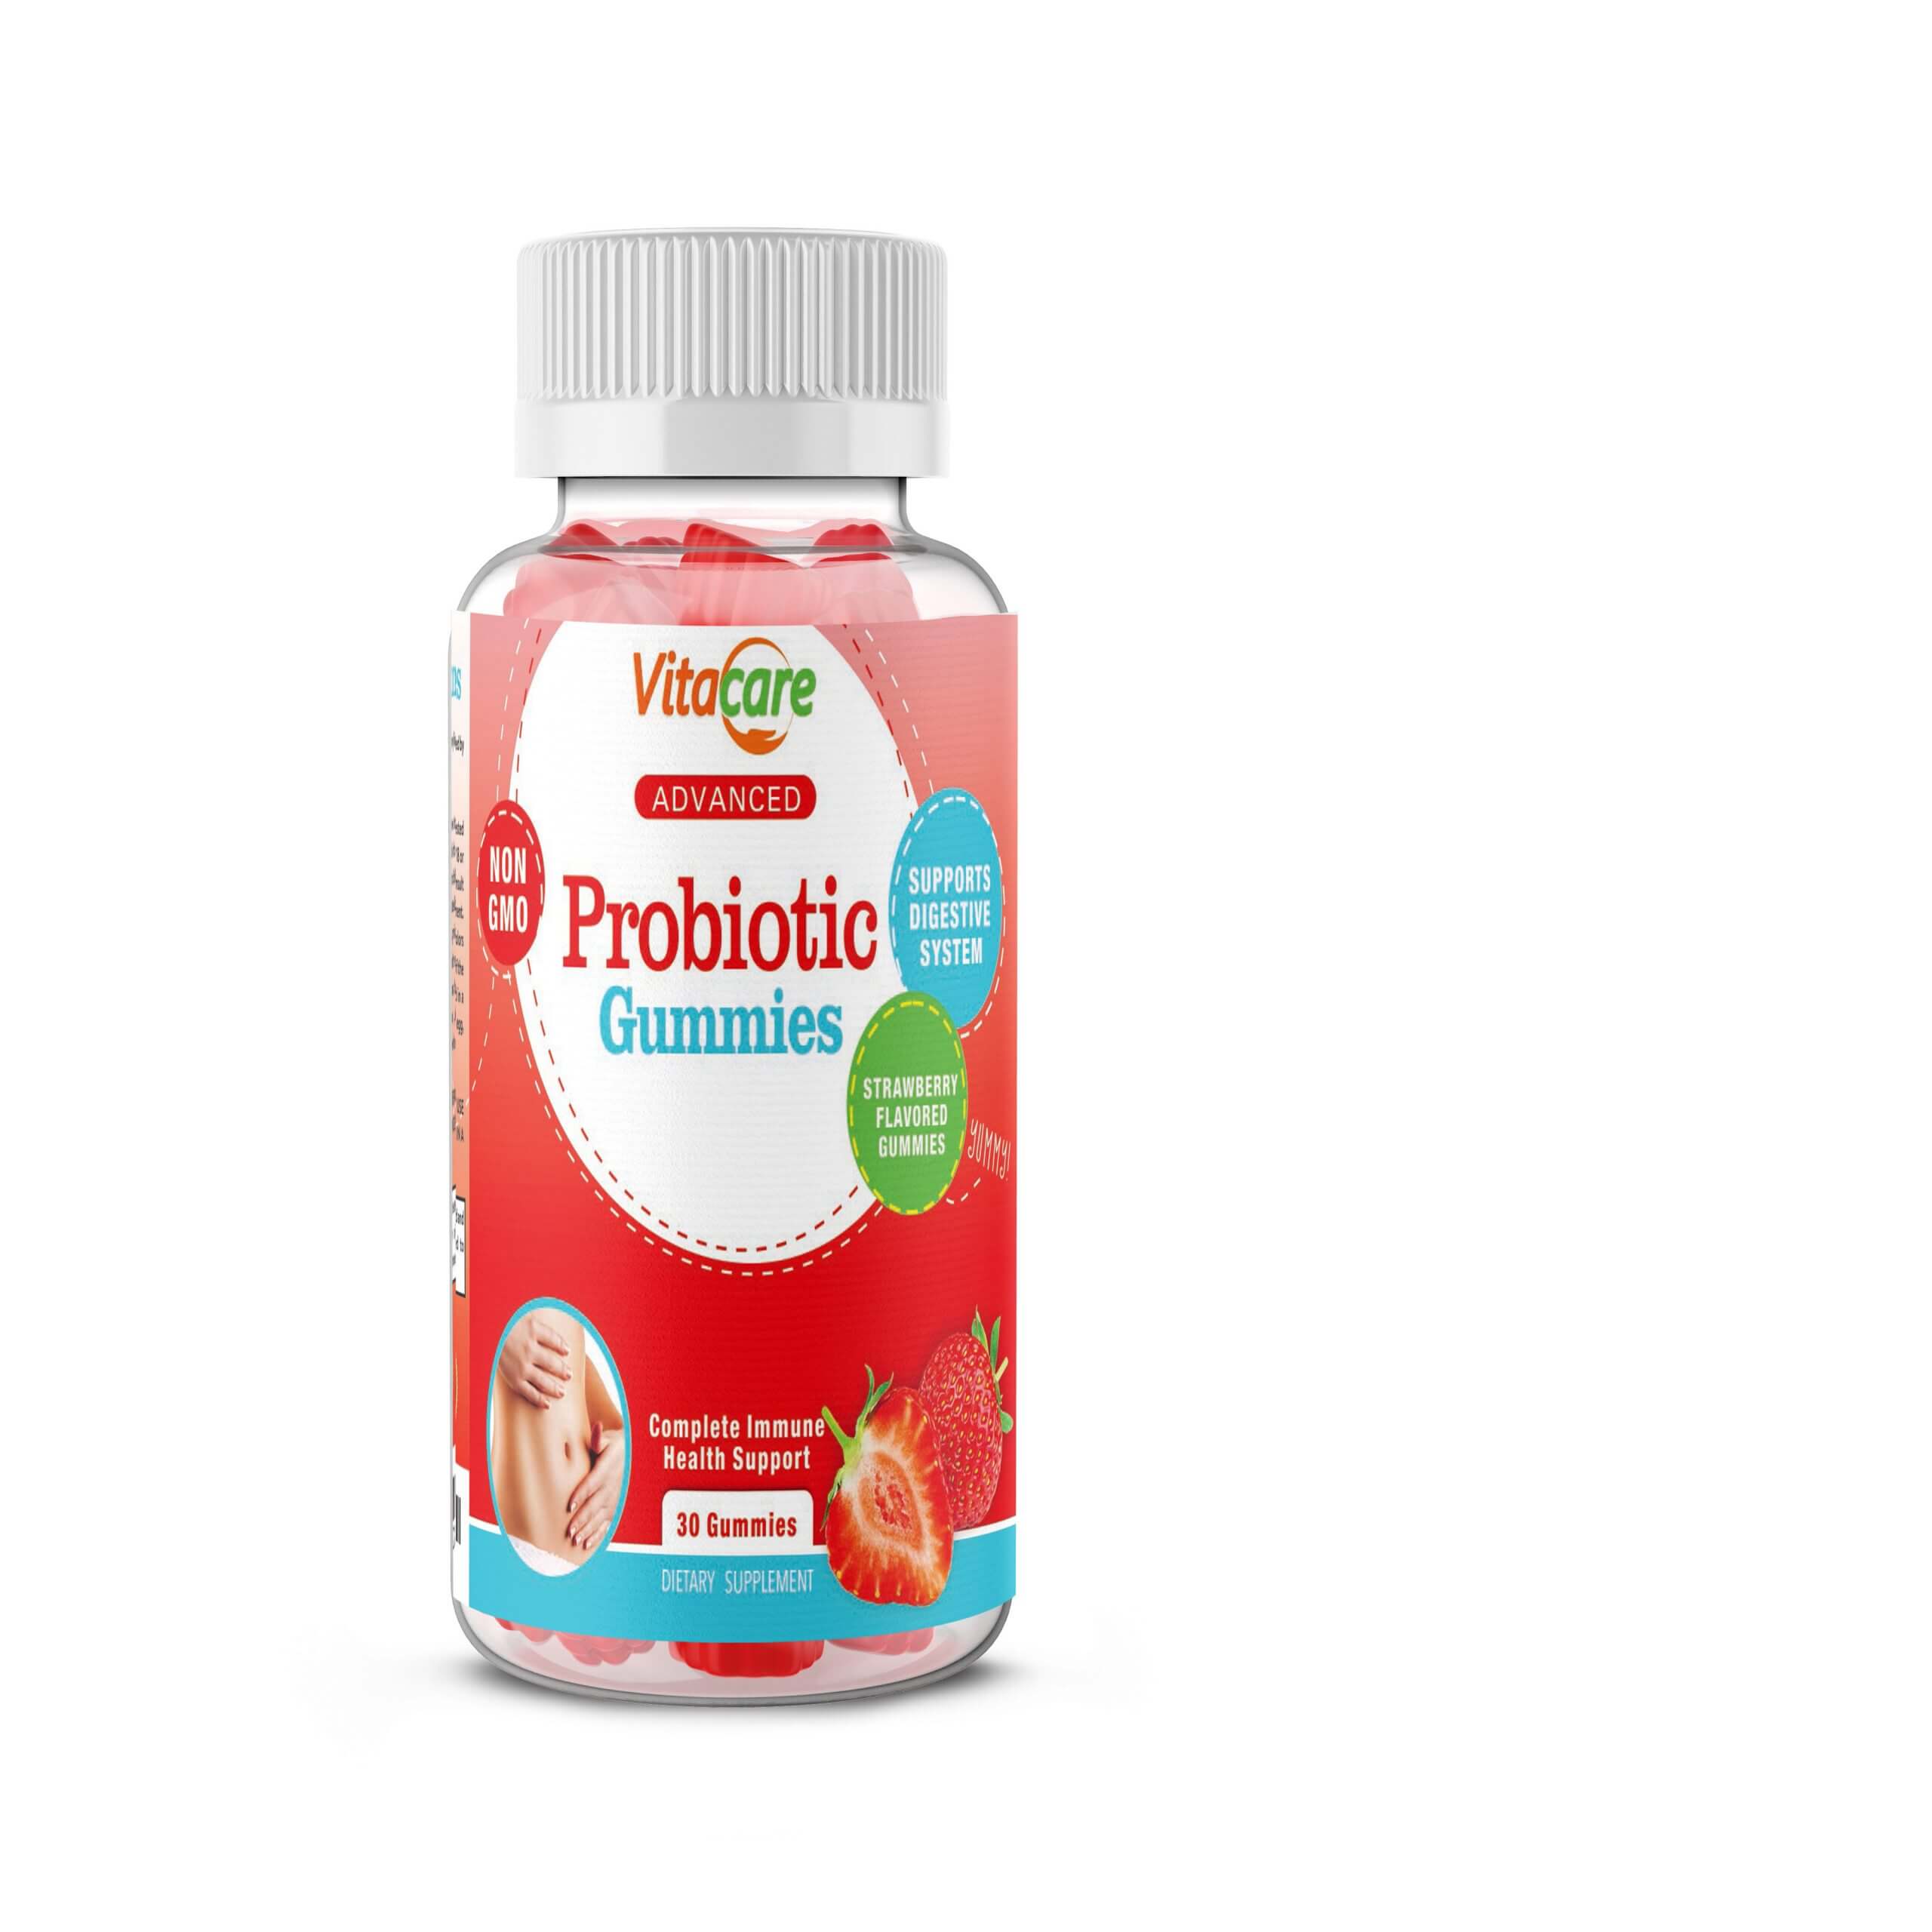 Vitacare probiotic